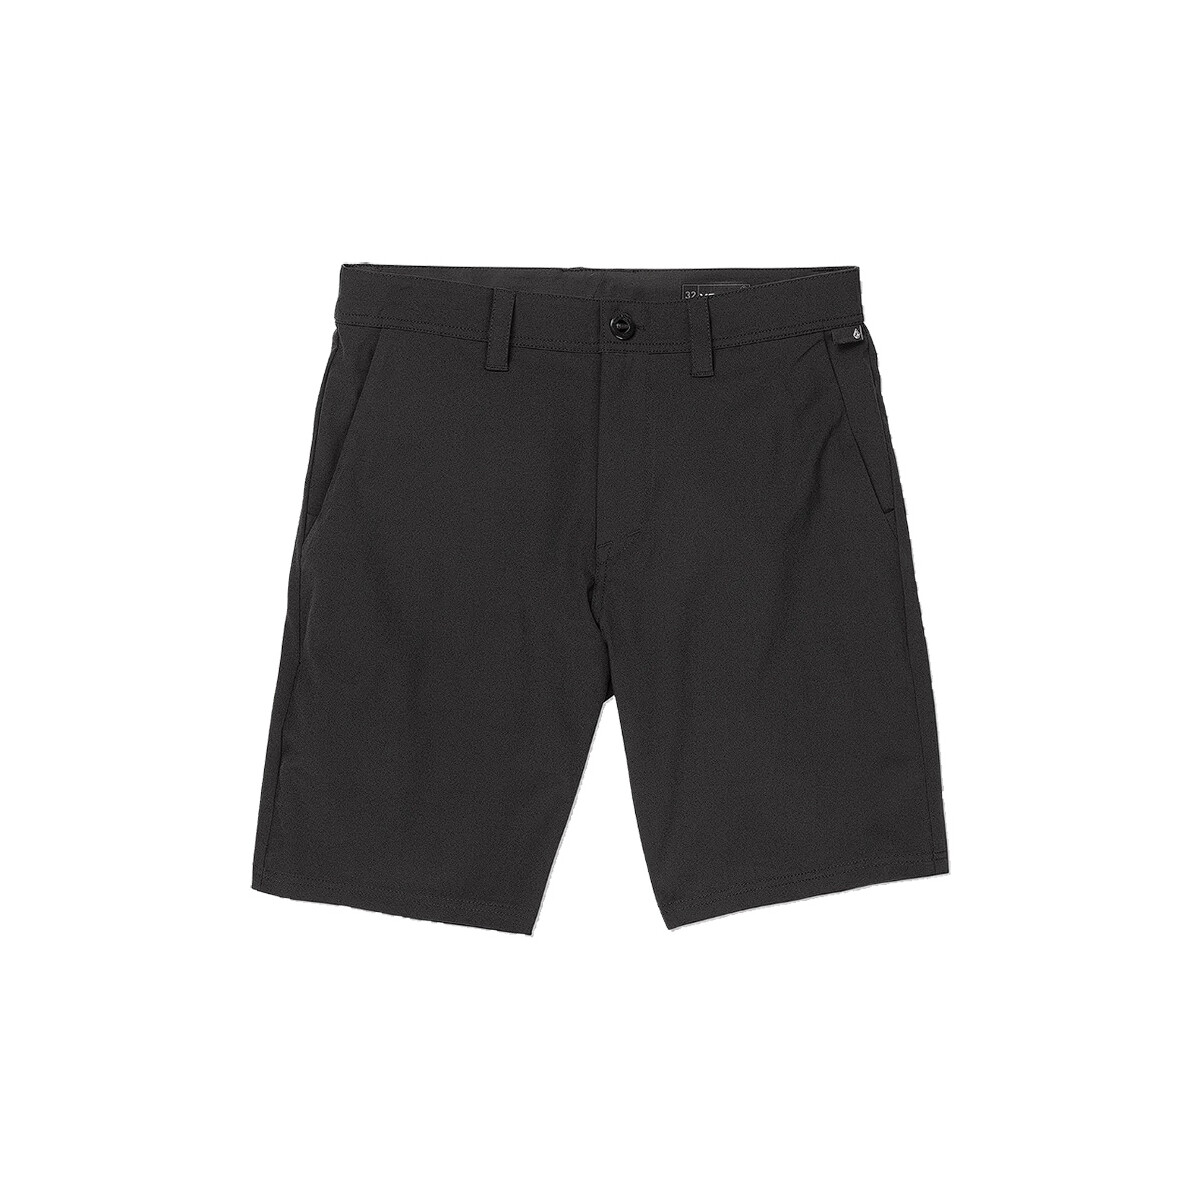 Textil Shorts / Bermudas Volcom FRICKIN CROSS SHRE Preto